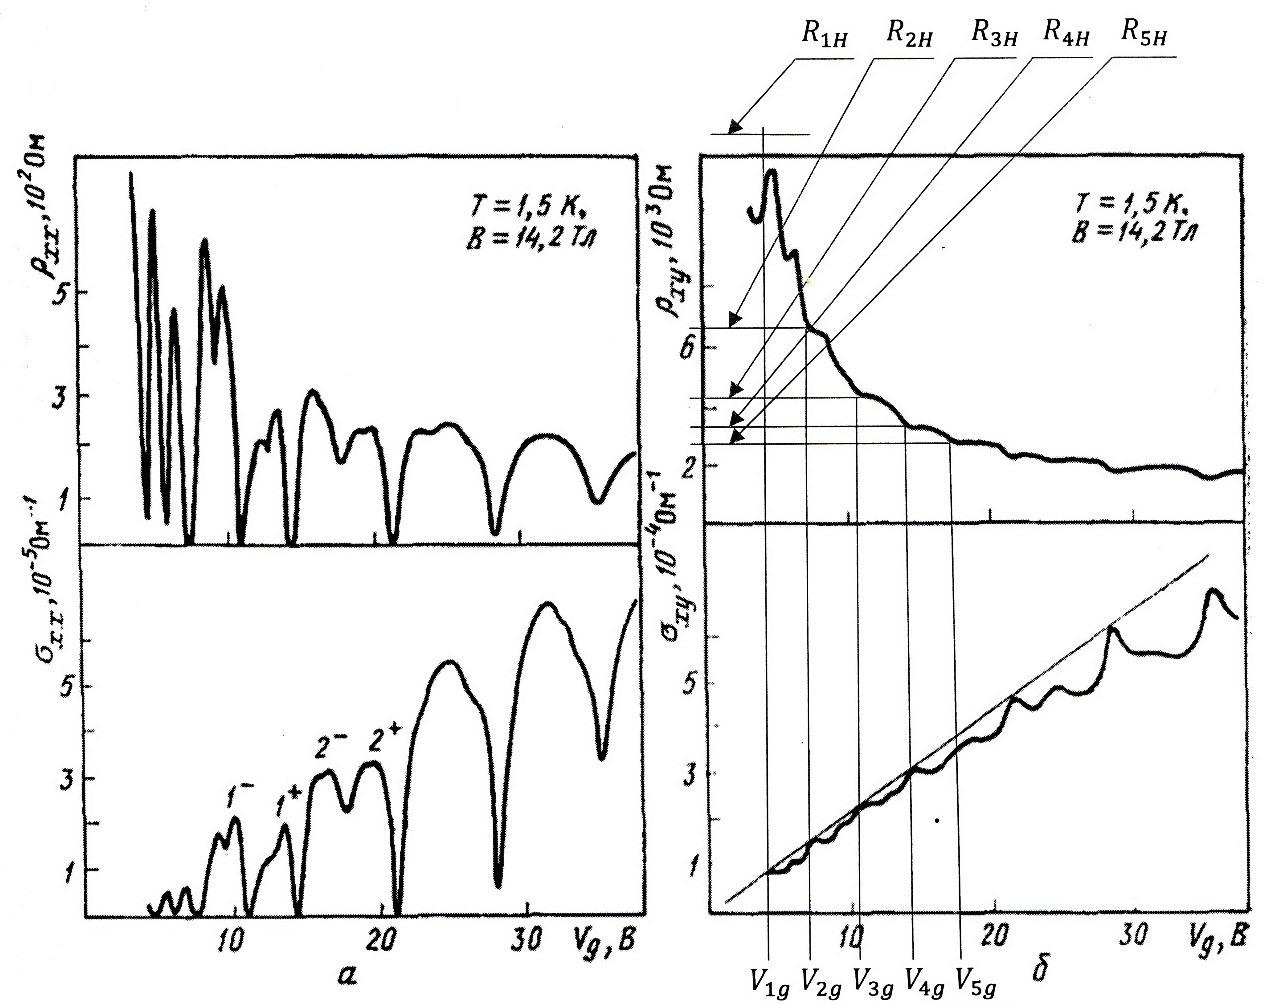 Экспериментальные данные для ρxx и ρxy кремниевого МОП-транзистора вместе с вычисленными значениями σxx и σxy в зависимости от напряжения на затворе при B=14,2 Тл